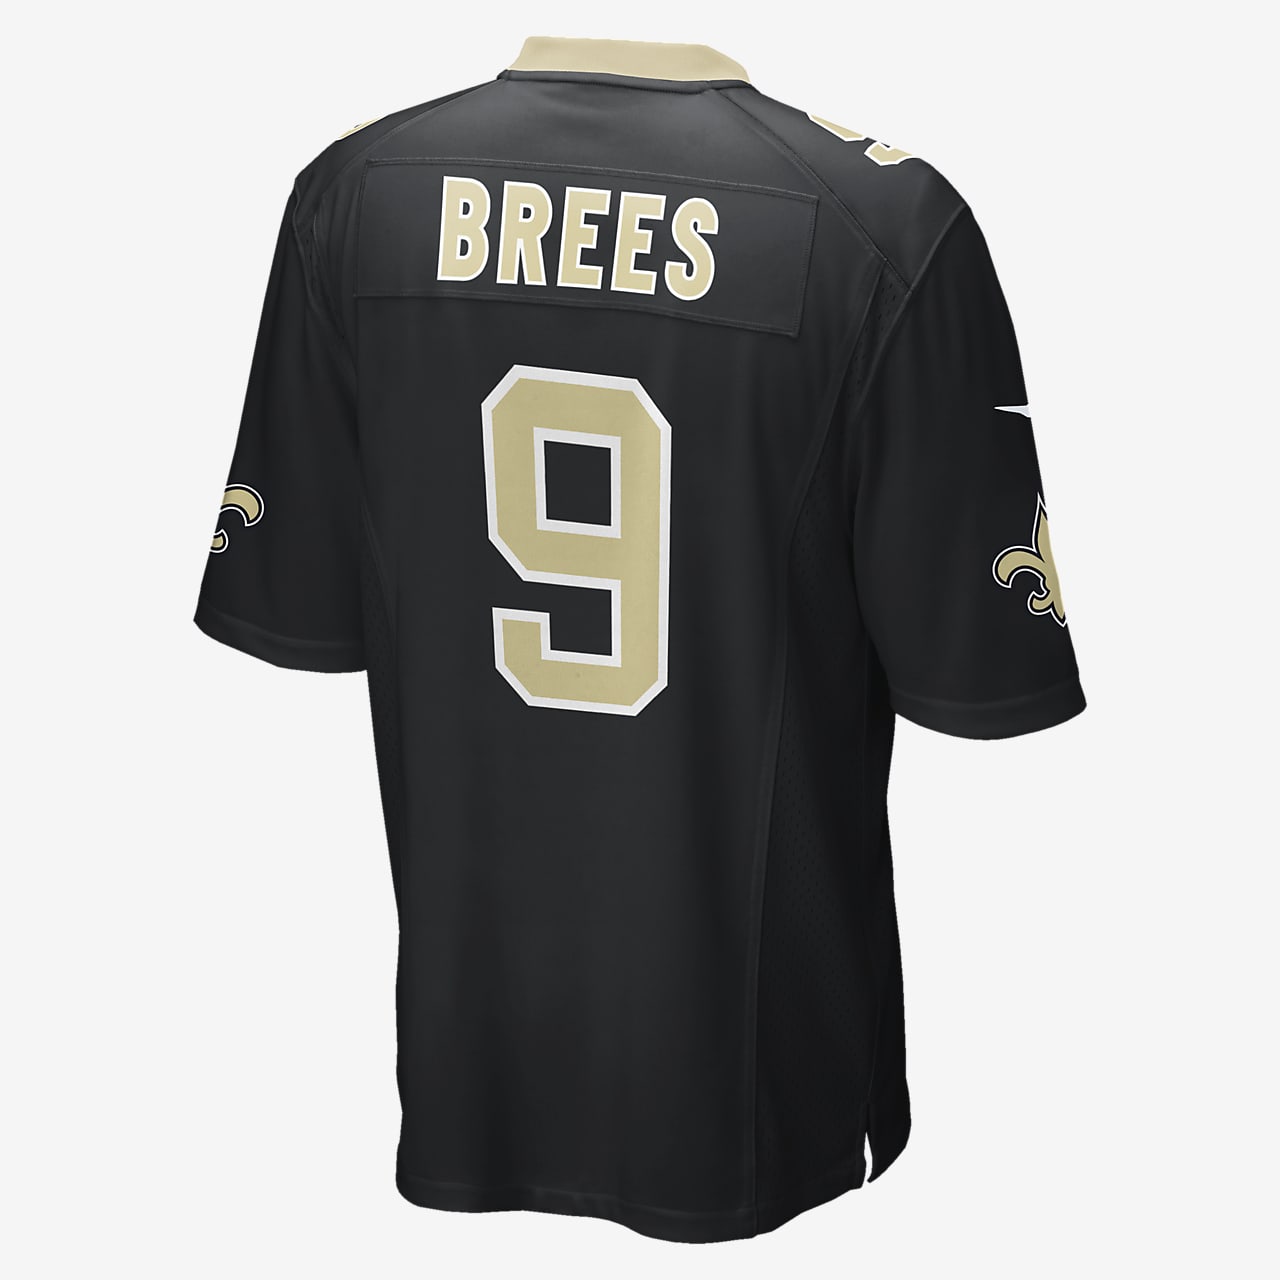 NFL New Orleans Saints (Drew Brees) Men 